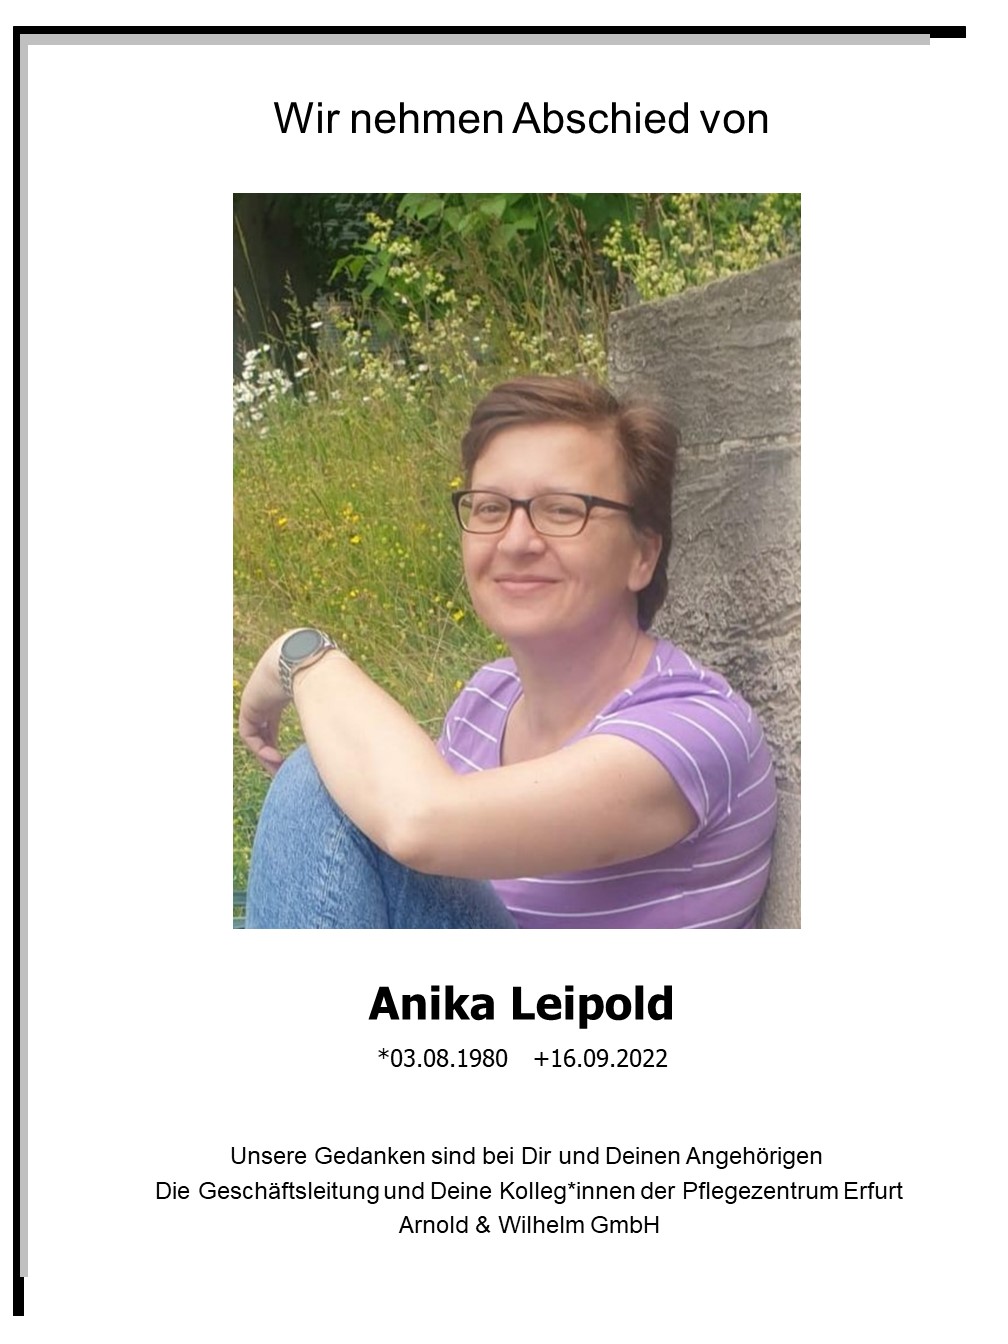 Anika Leipold